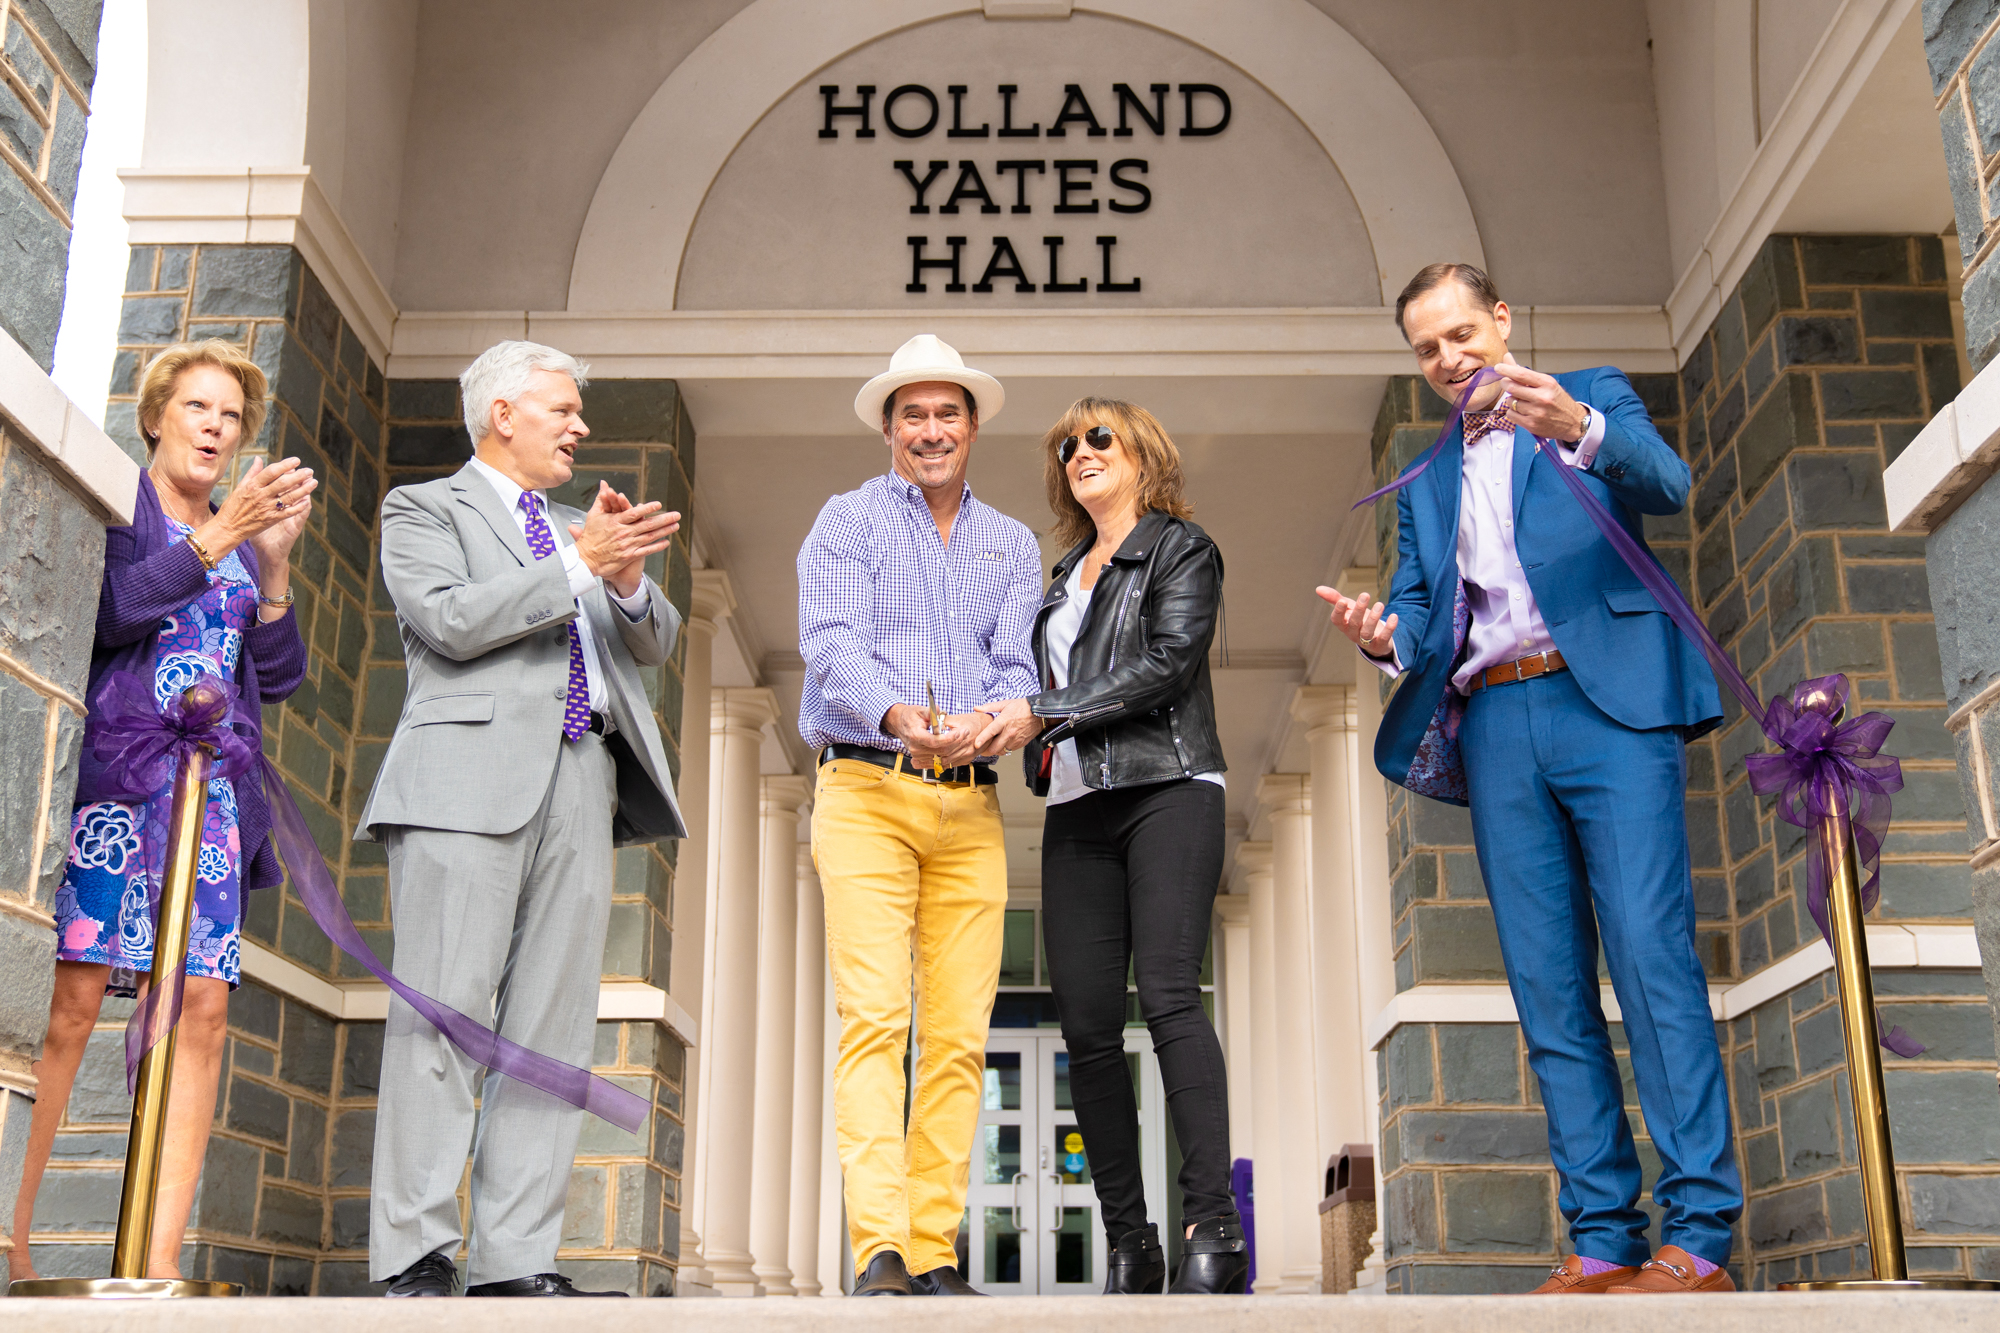 Paul Holland and Linda Yates officially cut the ribbon dedicating Holland Yates Hall